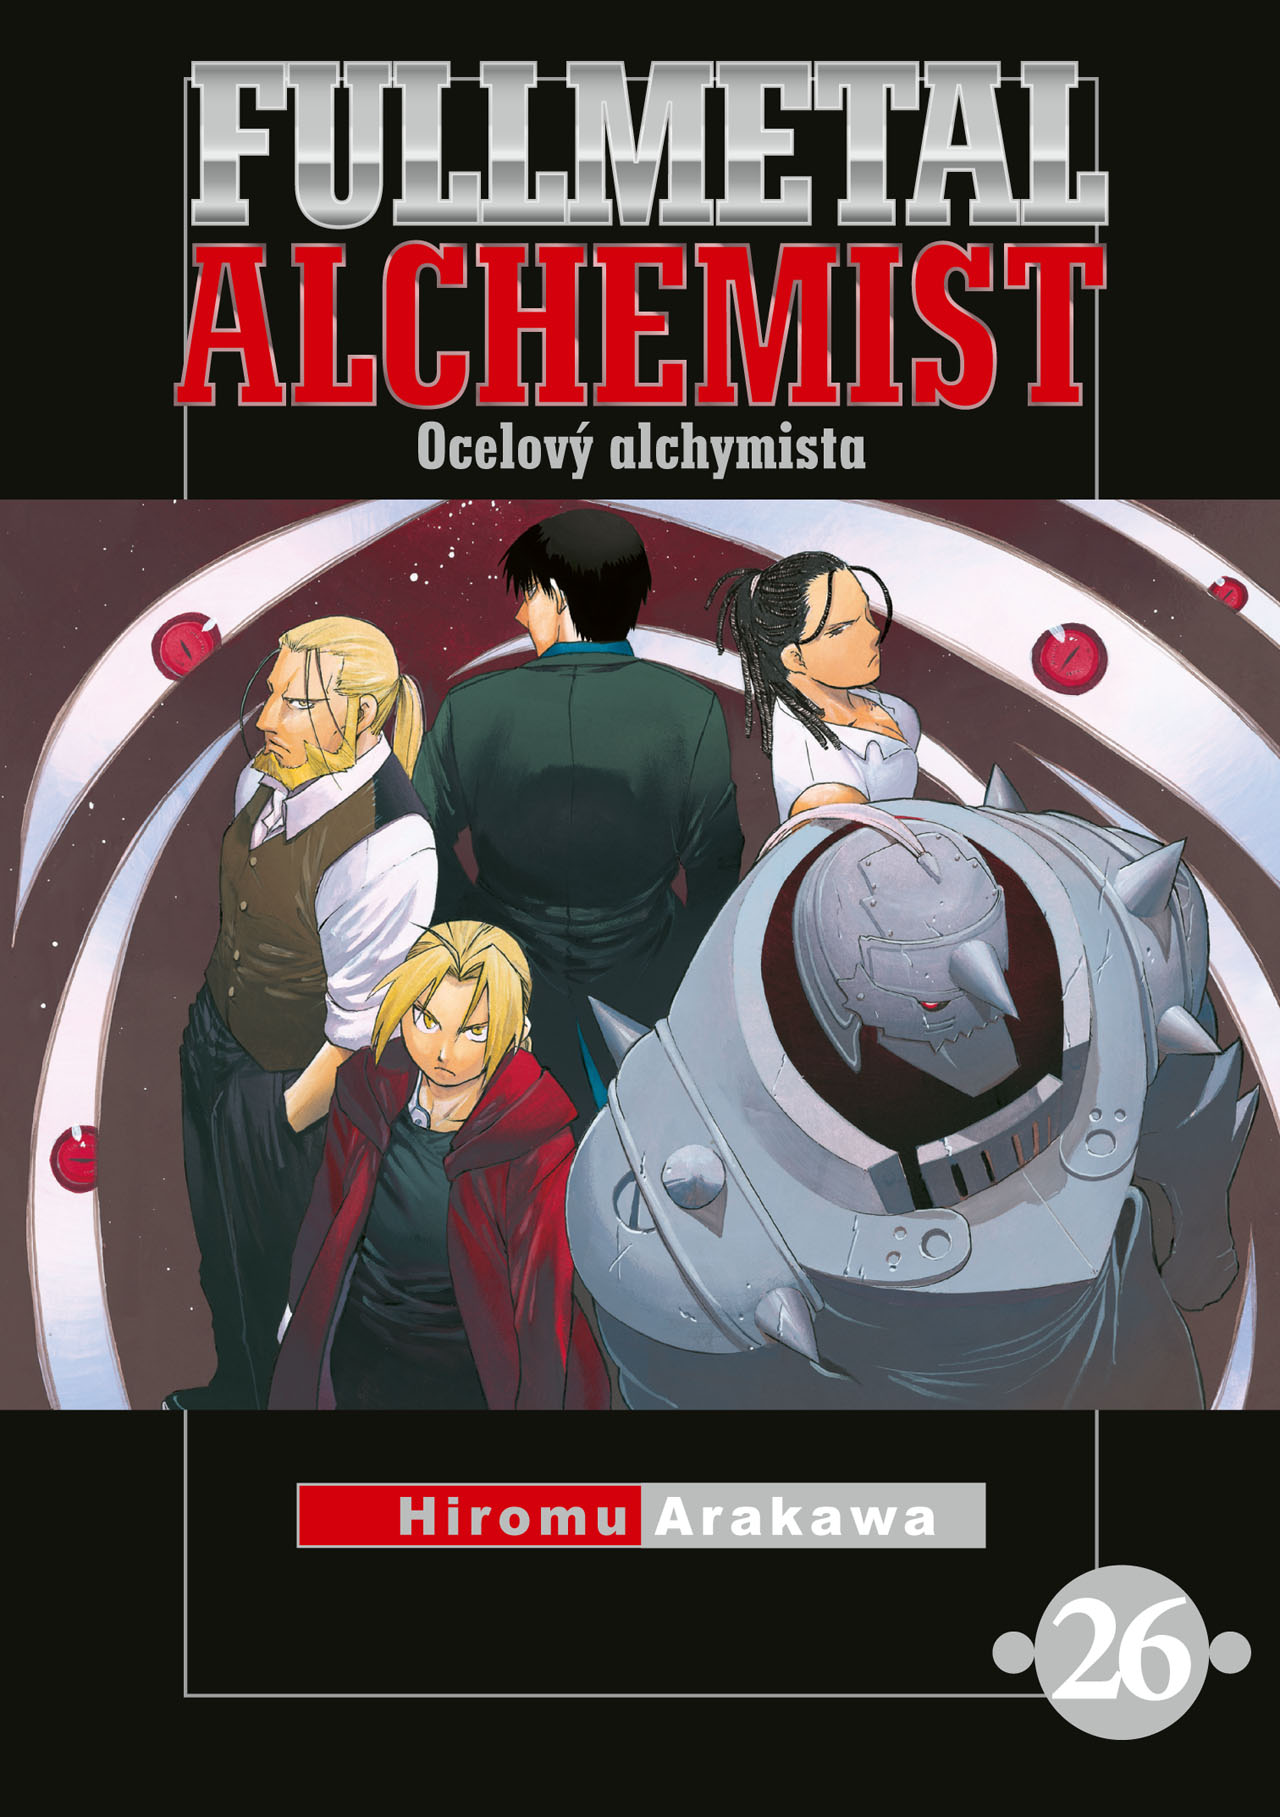 obrázek k novince - Fullmetal Alchemist - Ocelový alchymista 26